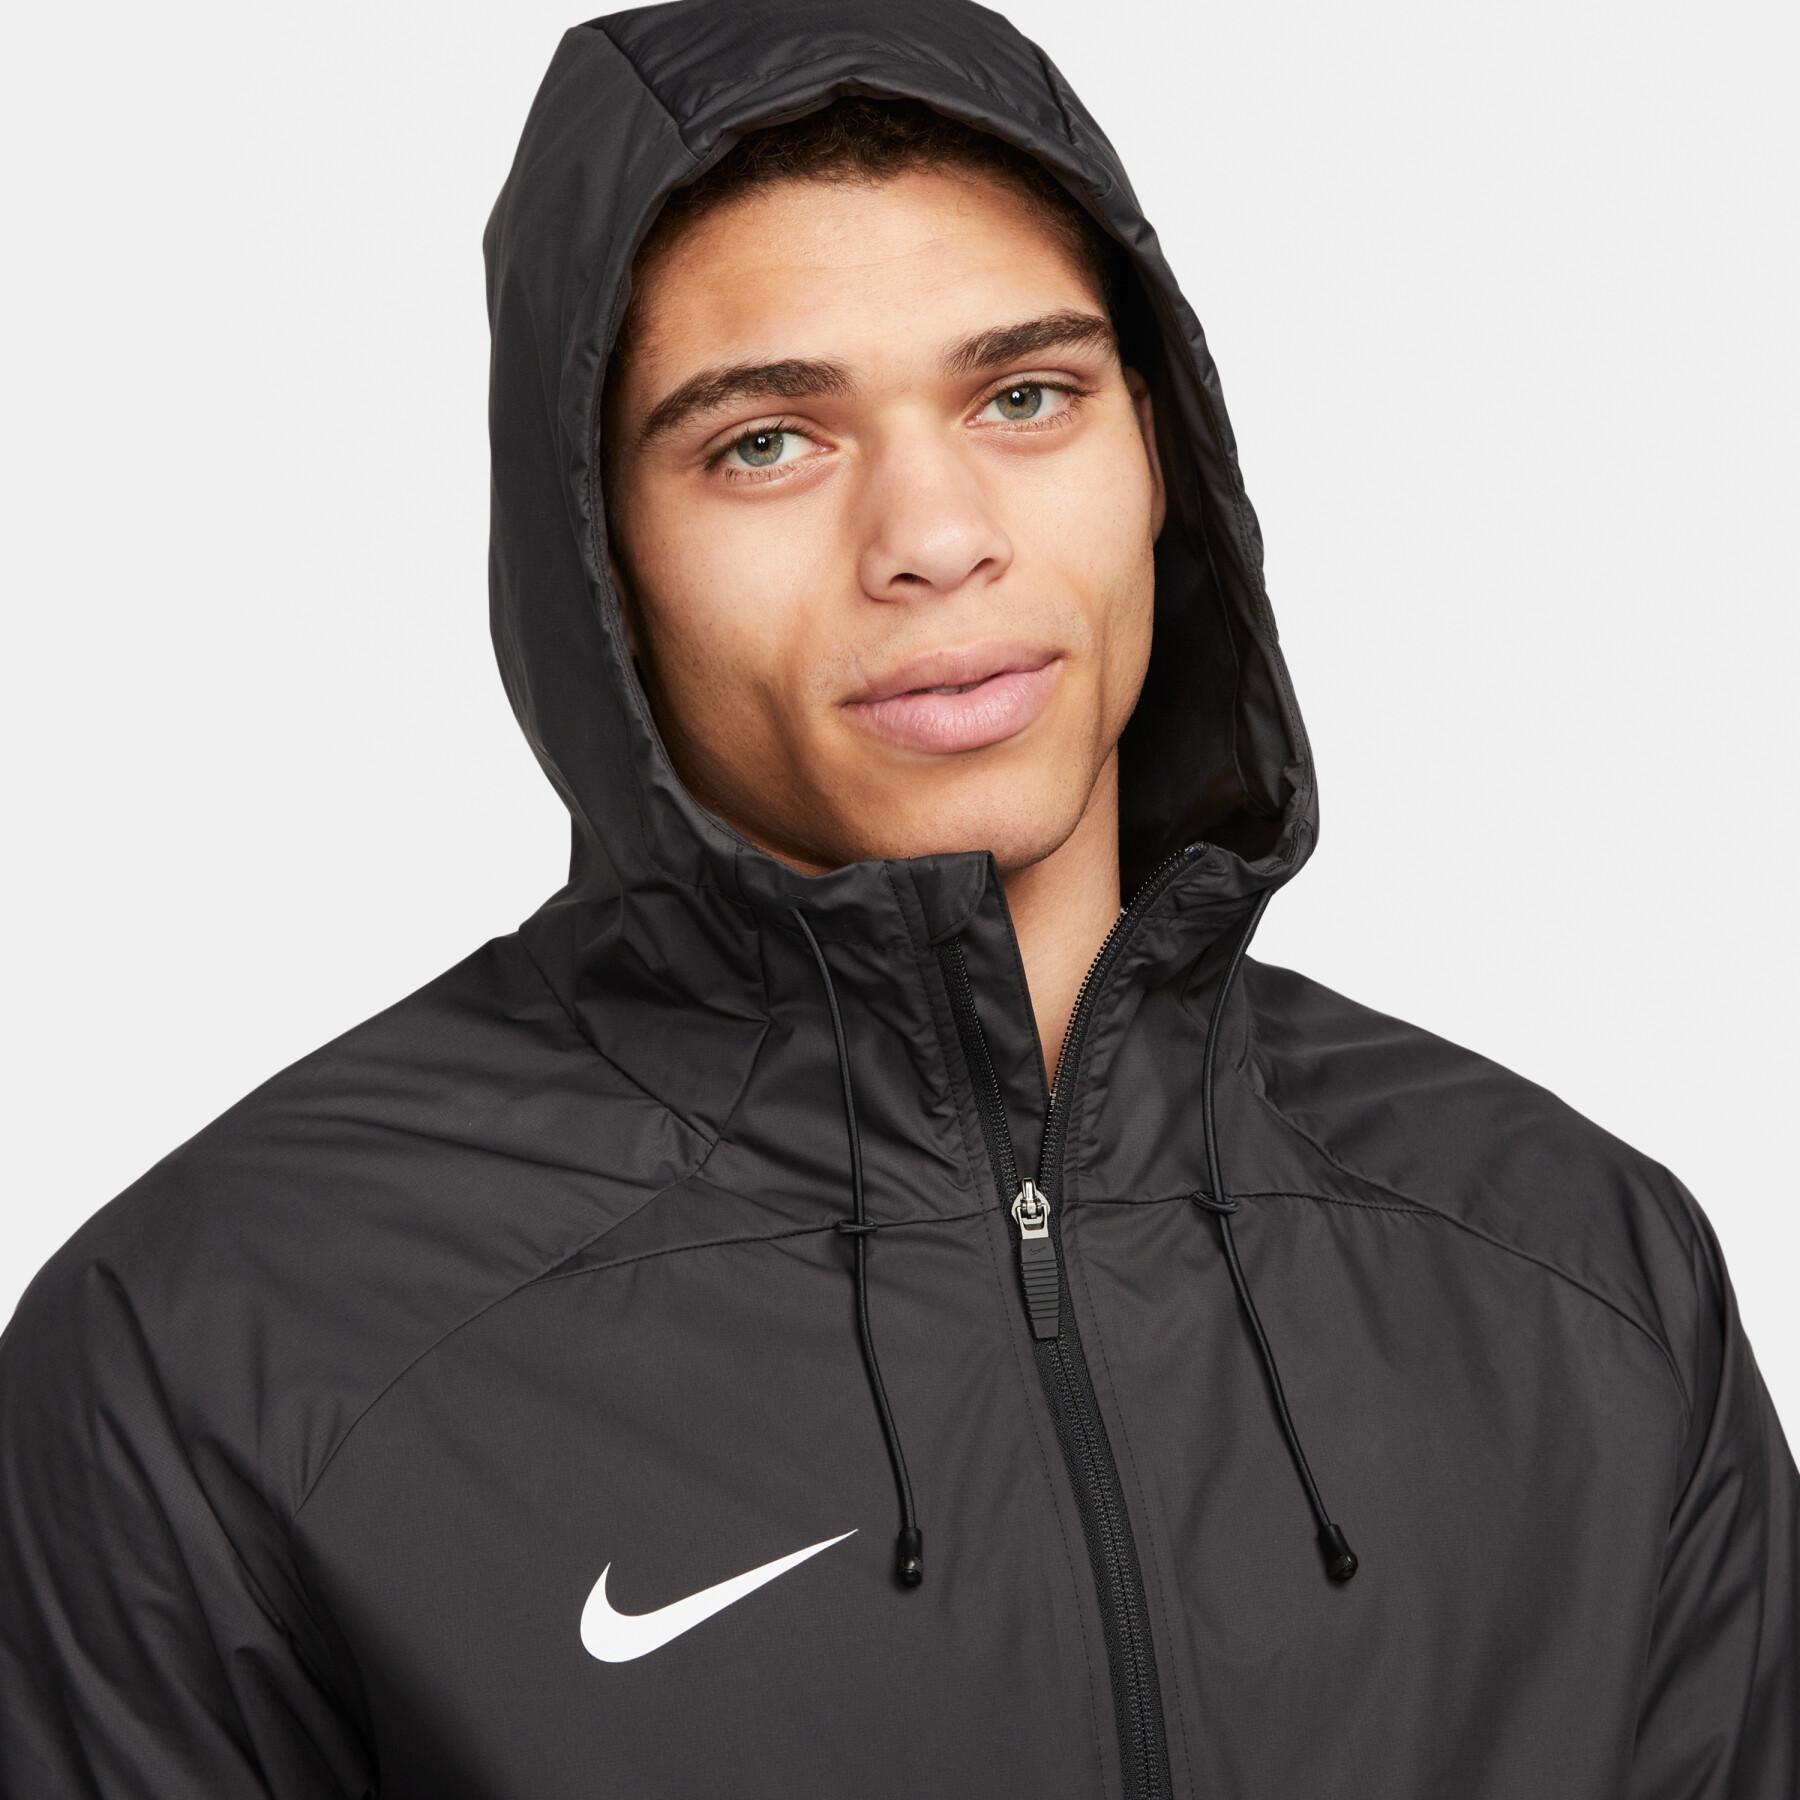 Waterproof jacket Nike Academy Pro HD - Nike - Training Tops - Teamwear